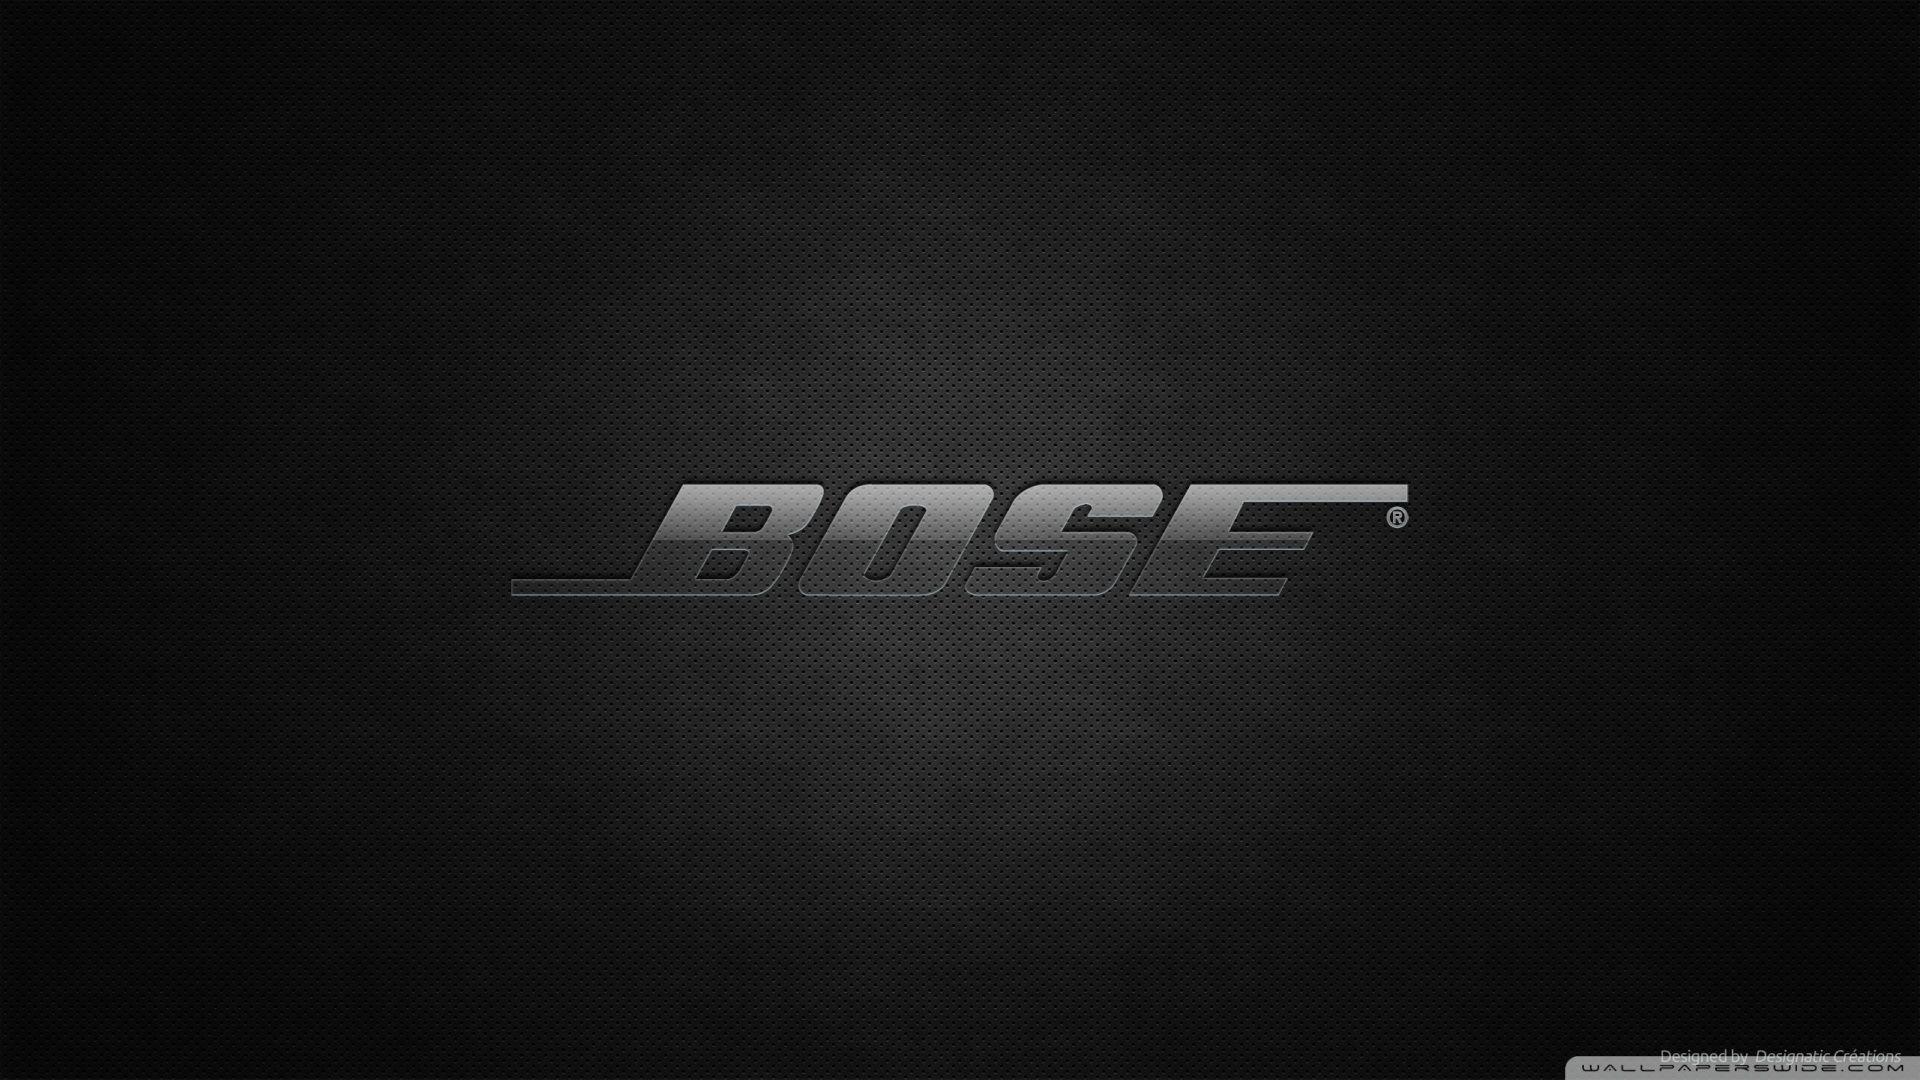 BOSE Music HD desktop wallpaper, High Definition, Fullscreen